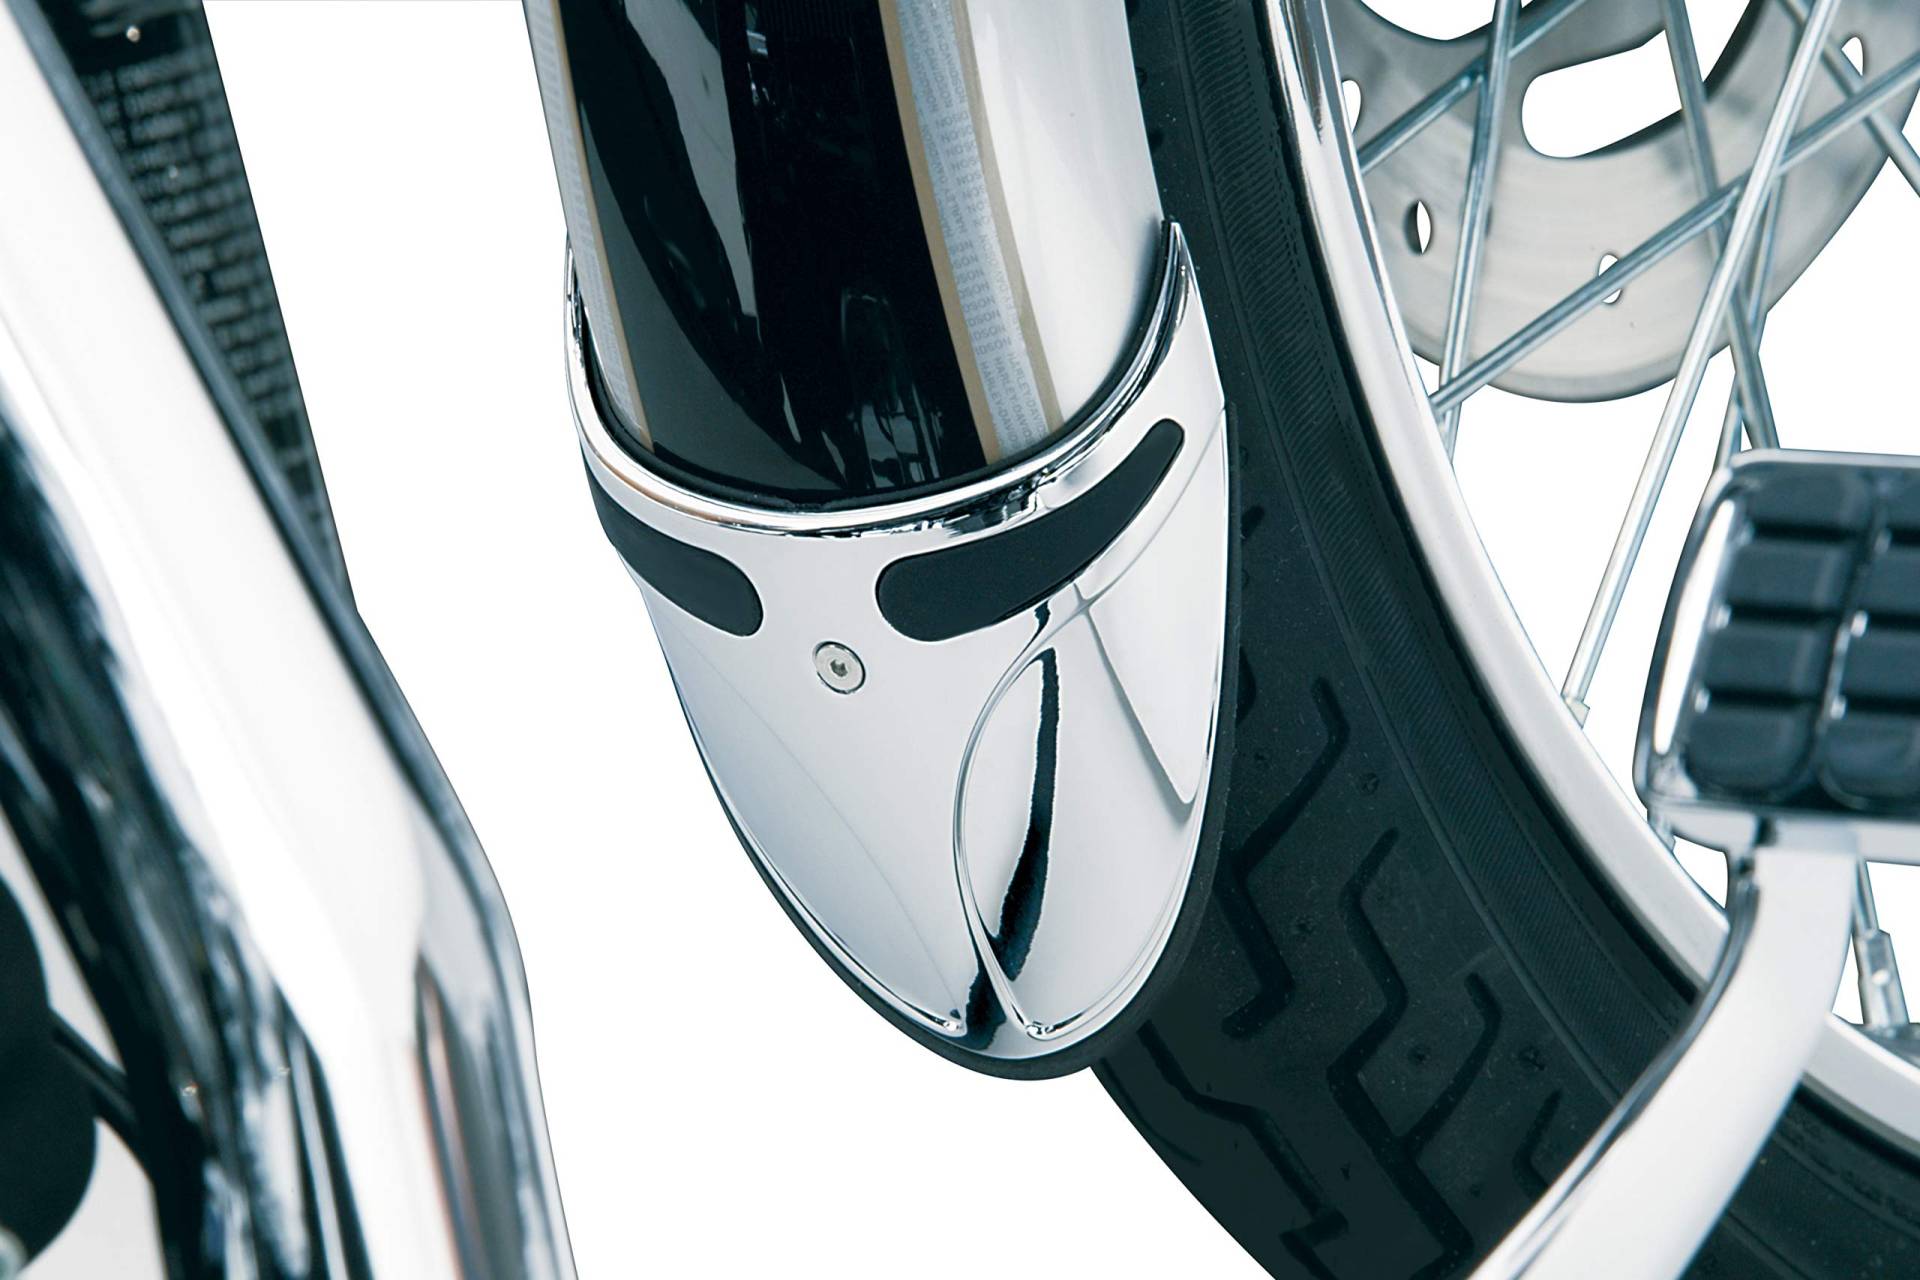 Kuryakyn 9016 Motorrad-Akzent-Zubehör: Kotflügel-Verlängerung an schmalen vorderen Kotflügeln, für Harley-Davidson Motorräder, Chrom von Kuryakyn